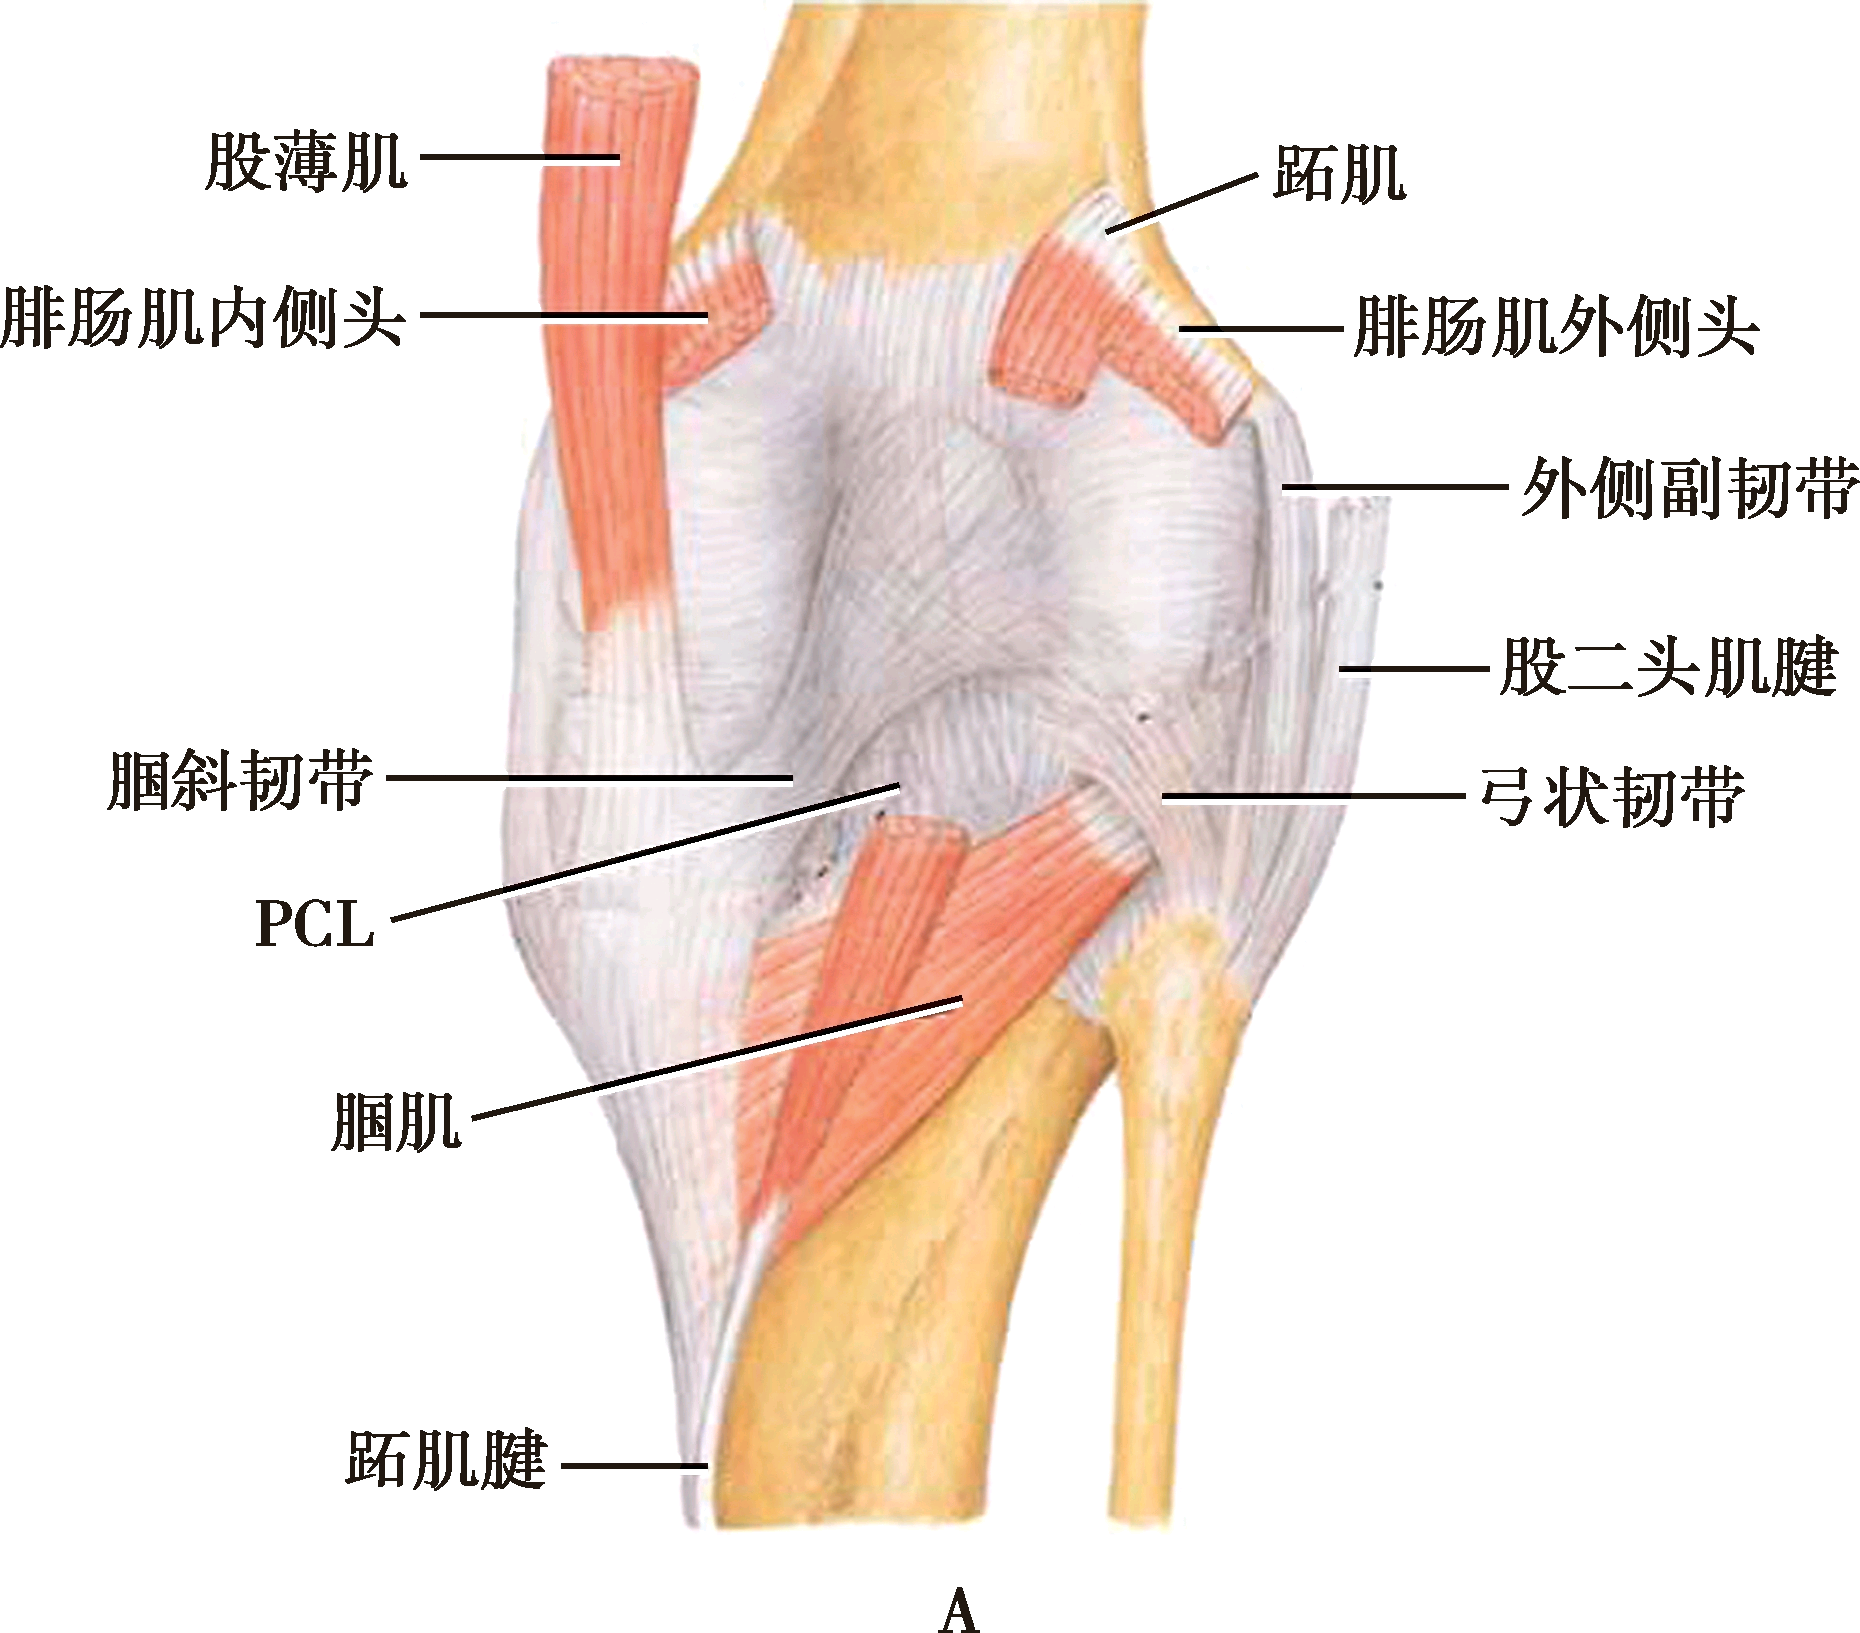 腘窝底解剖:a浅层;b深层膝关节后部主要结构为腘窝,呈菱形,有腘动